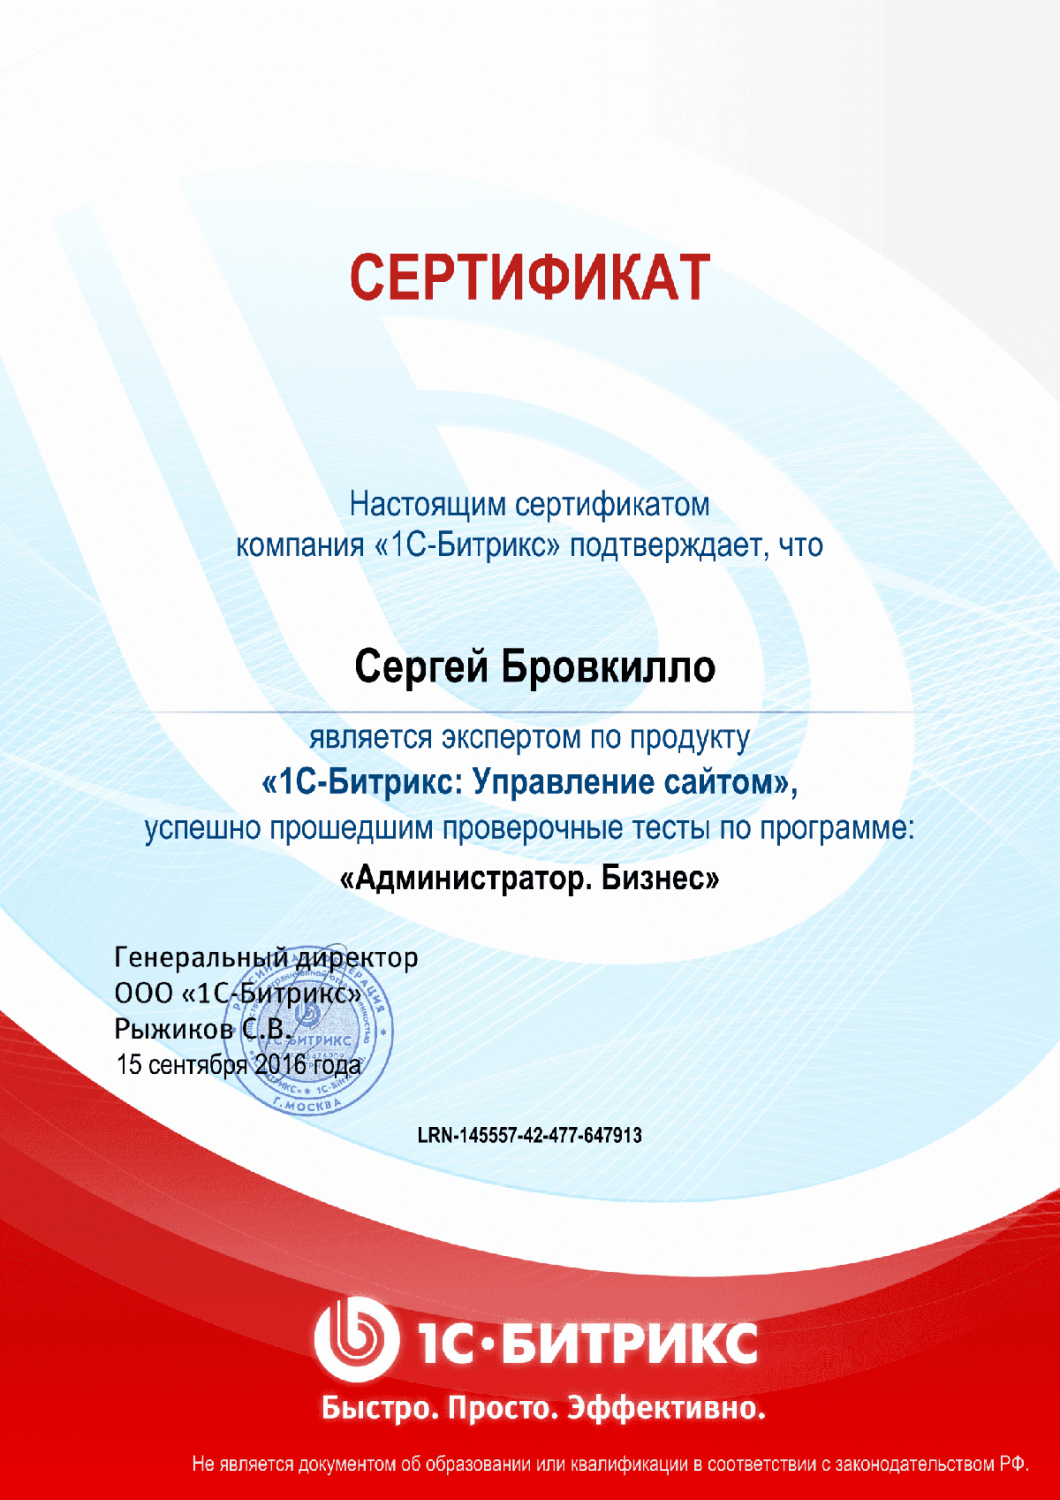 Сертификат эксперта по программе "Администратор. Бизнес" в Обнинска